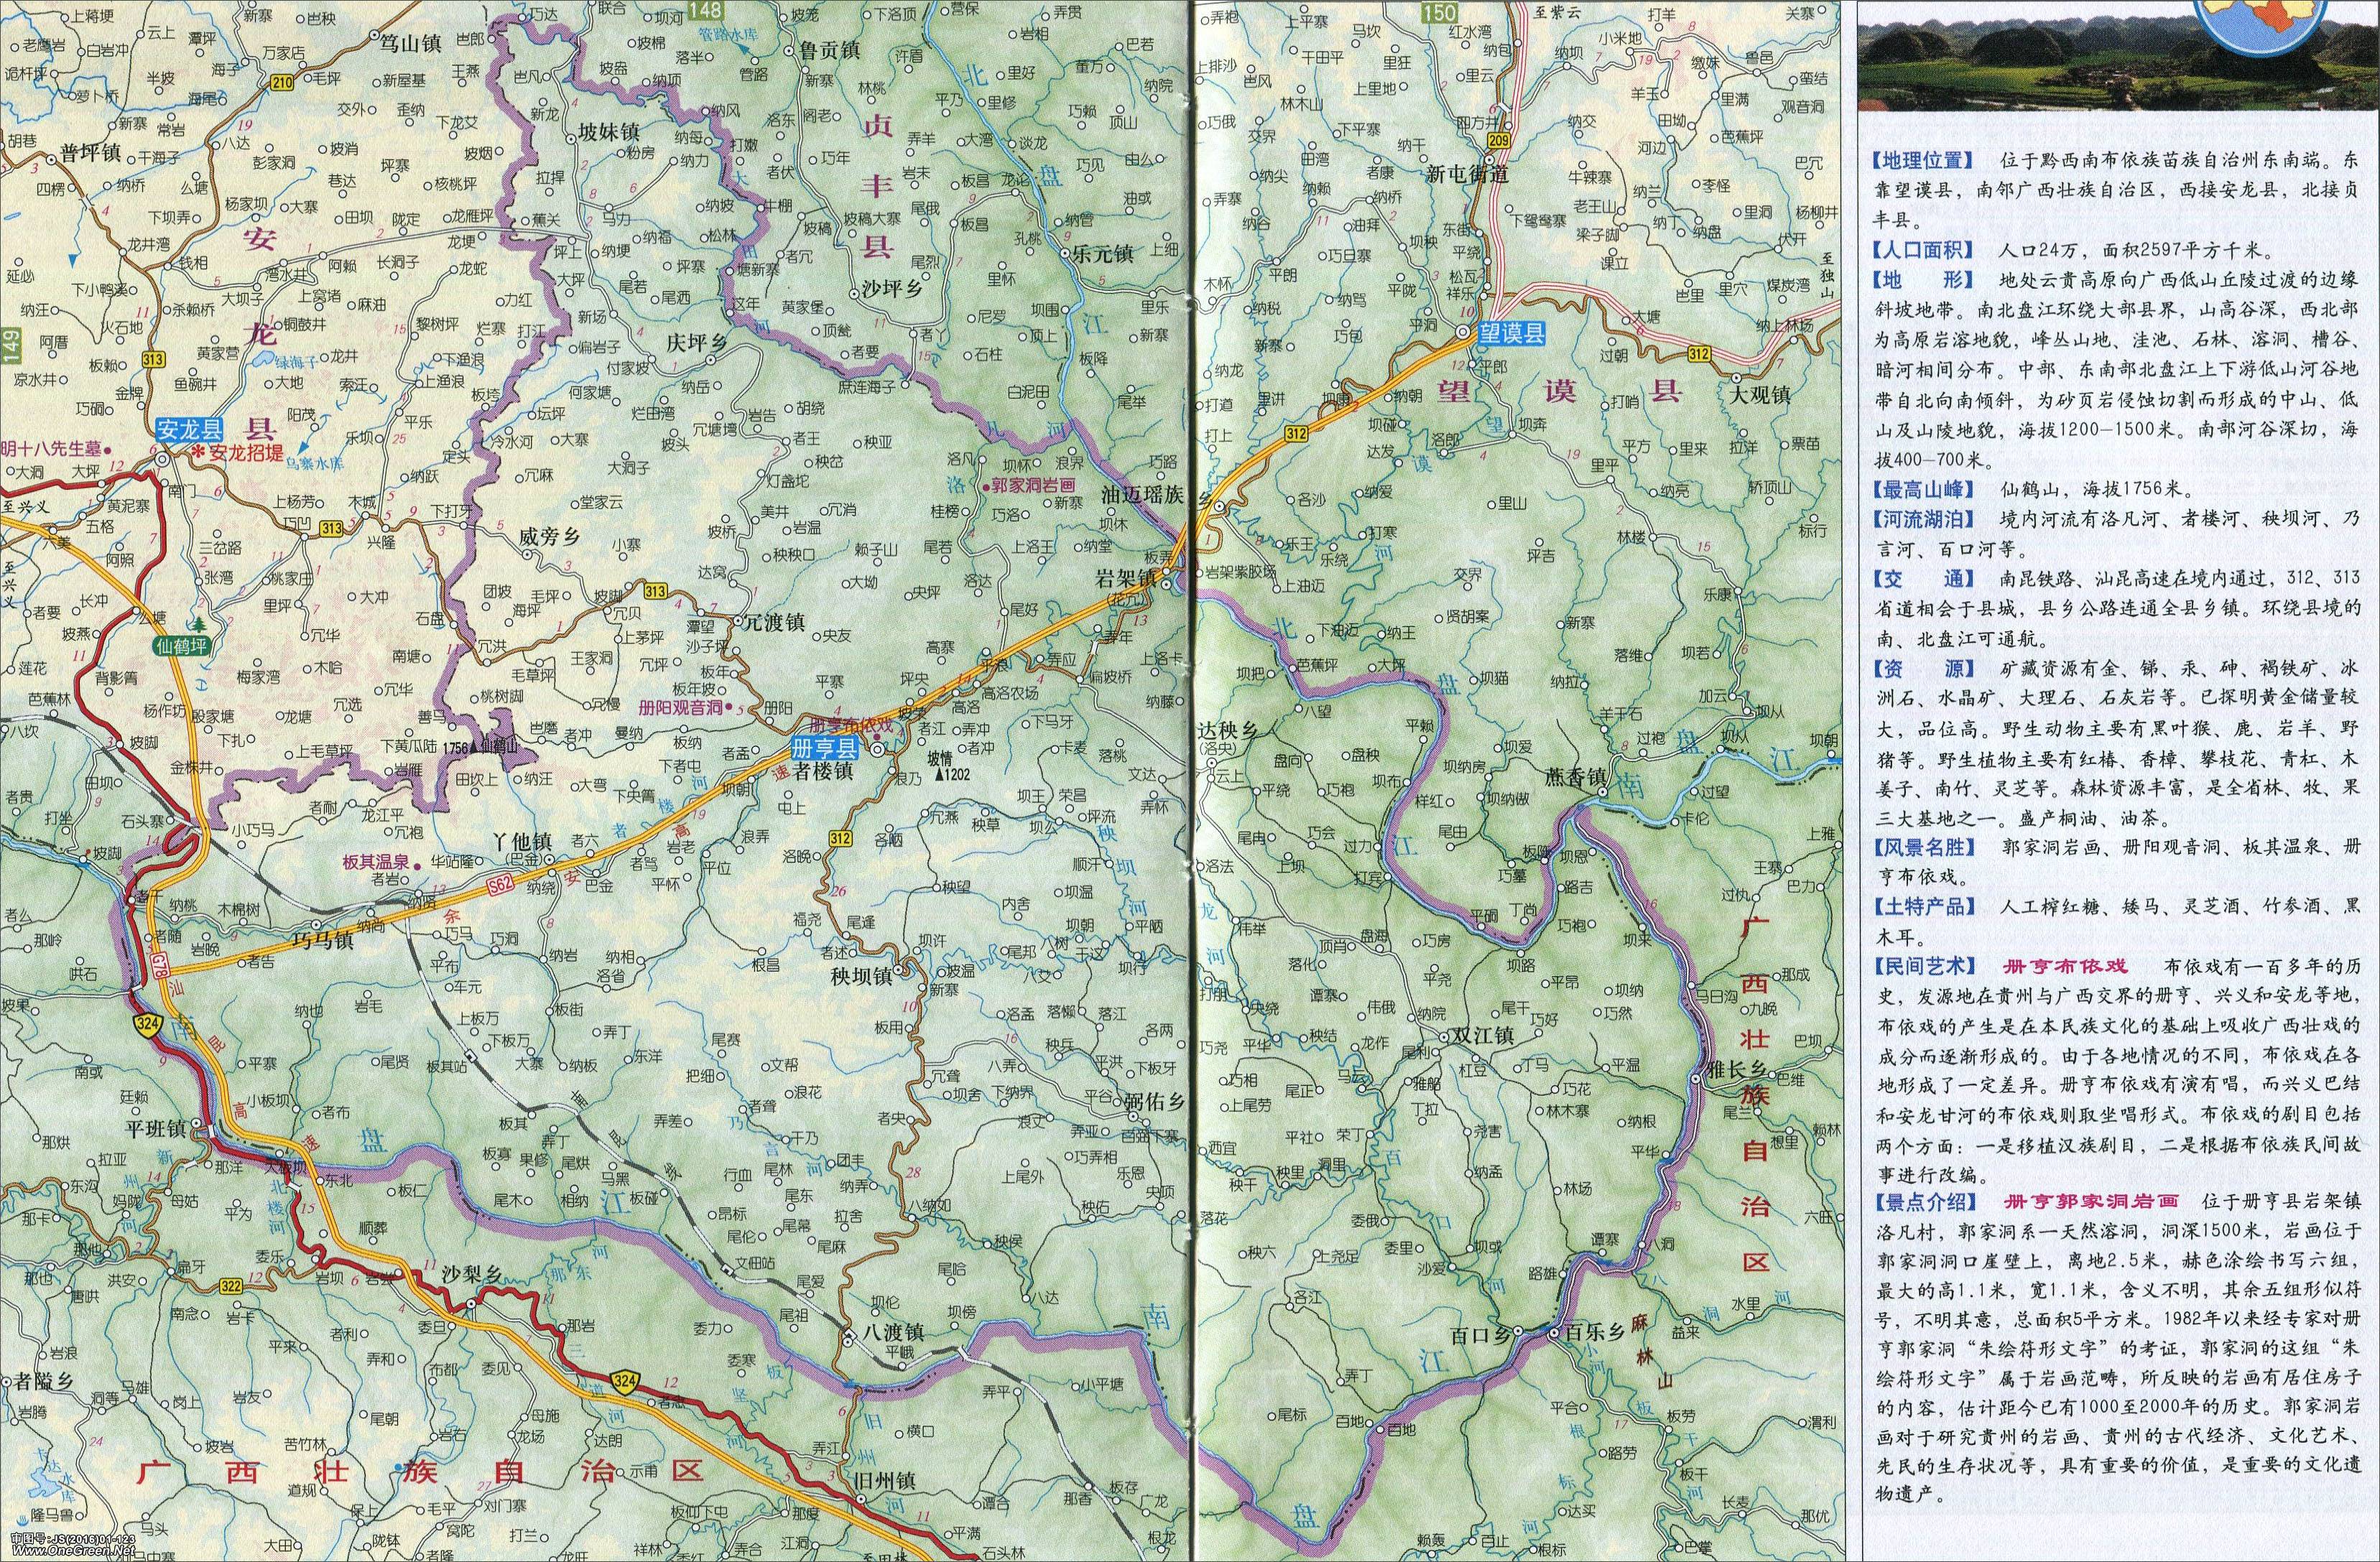 册亨县的地图不够清晰,另附清晰图如下:册亨县的旧版简介如下:册亨县